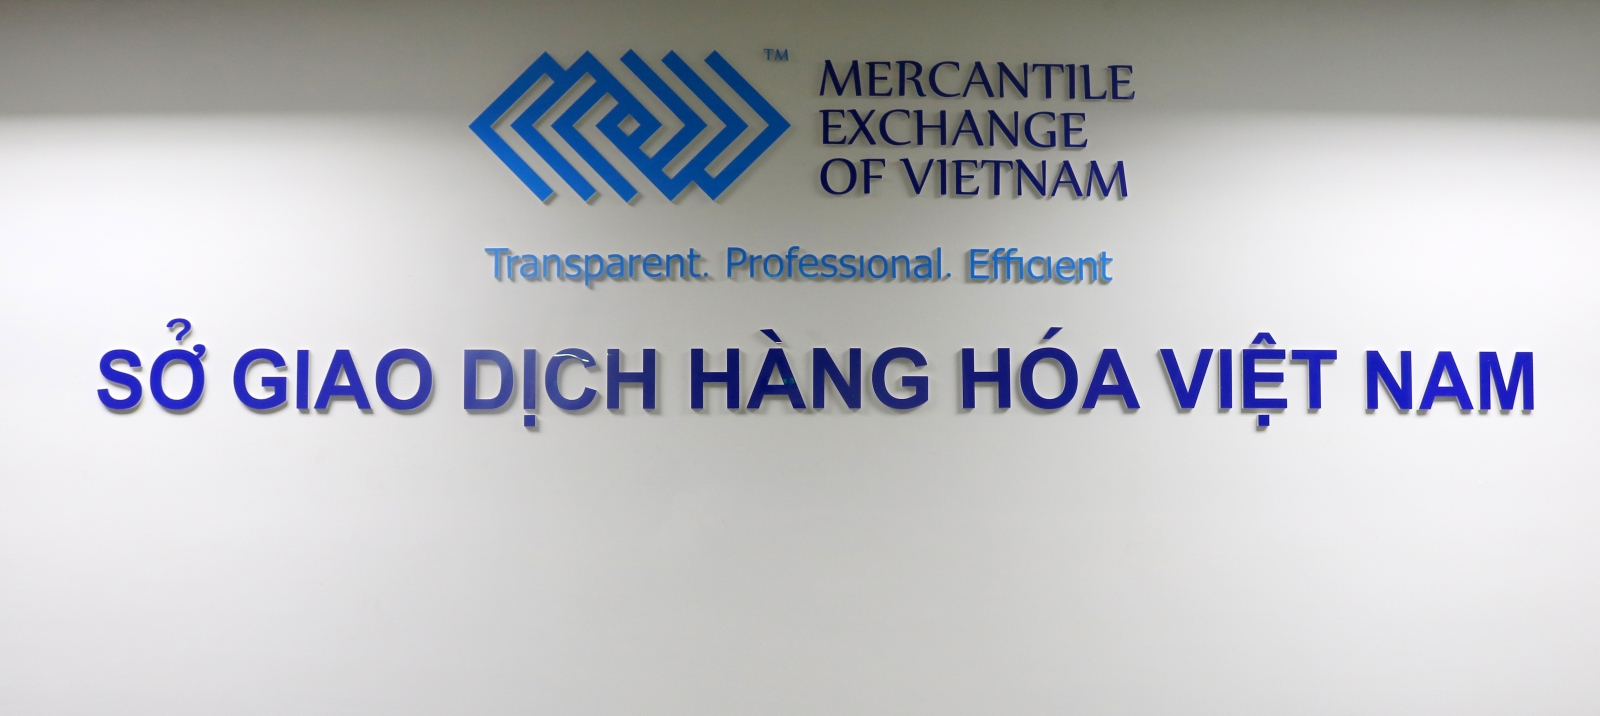 Công ty cổ phần Giao dịch hàng hóa Hà Nội là Thành viên Kinh doanh mới của Sở Giao dịch Hàng hóa Việt Nam